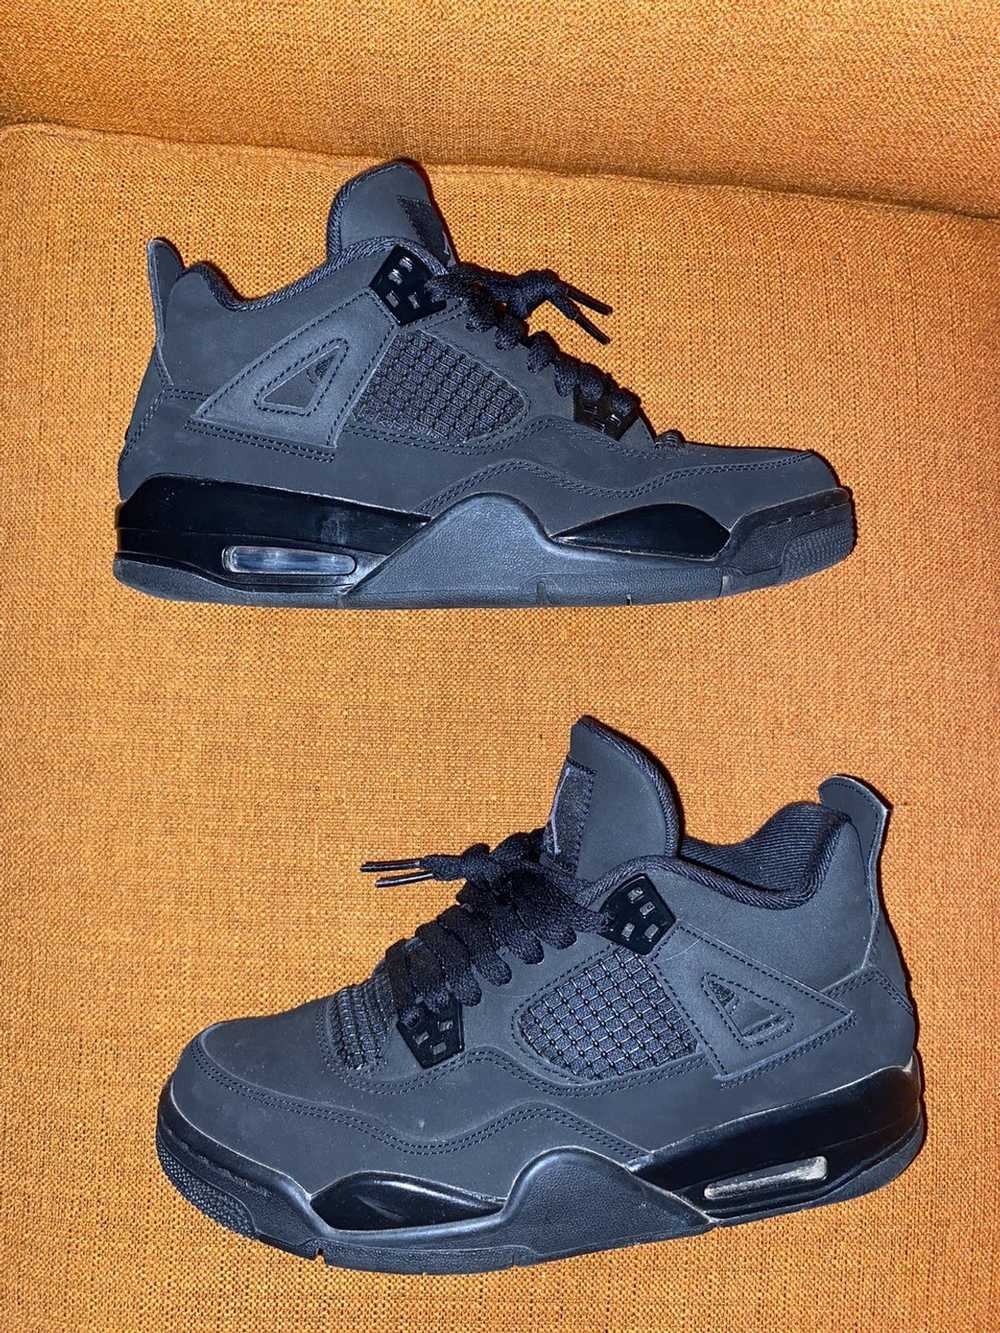 Jordan Brand All black Jordan 4’s - image 3